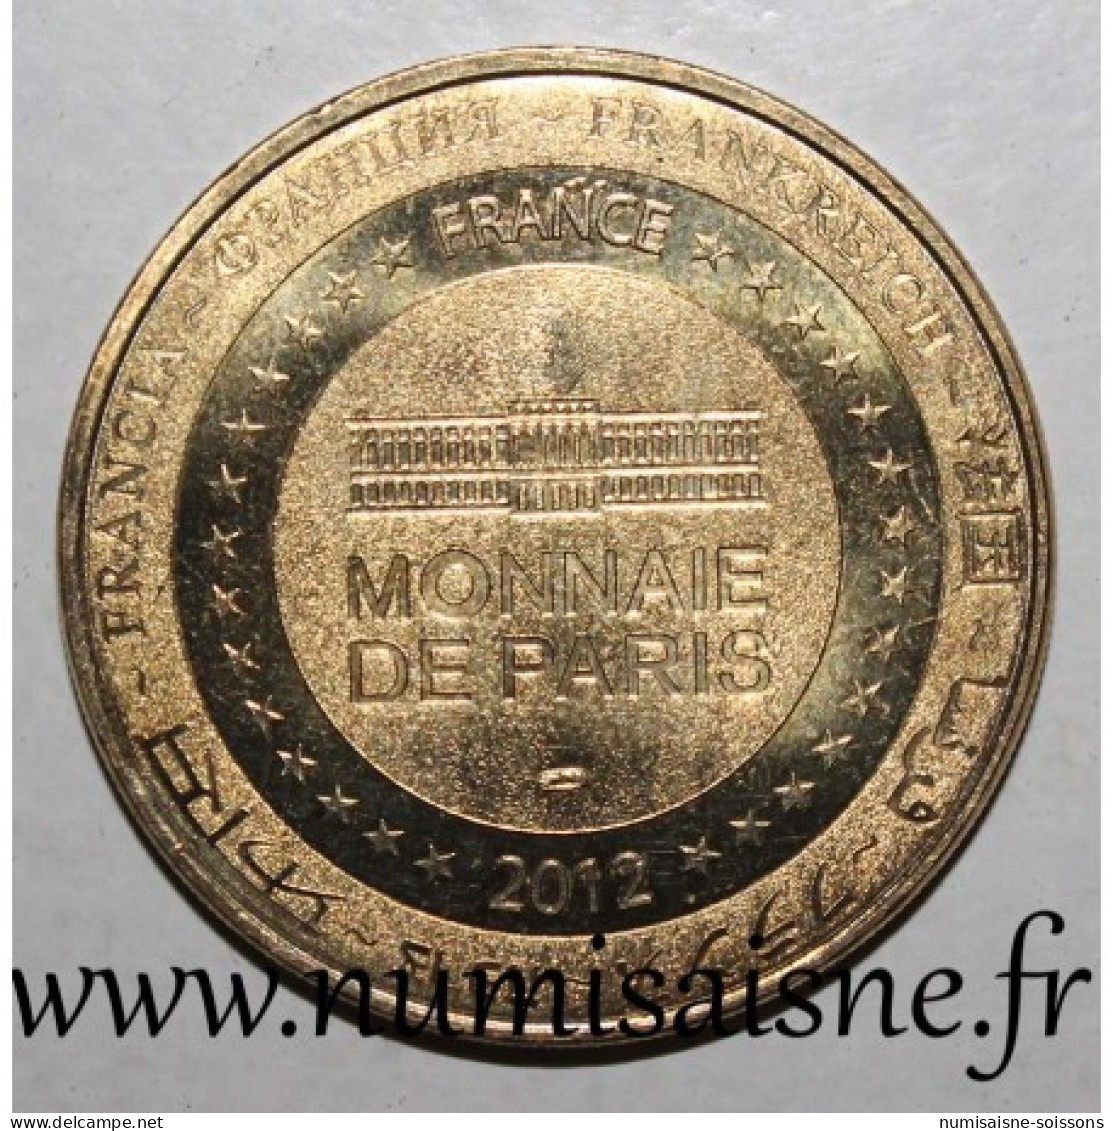 86 - LARCHER - FOIRE MÉDIÉVALE - Monnaie De Paris - 2012 - 2012